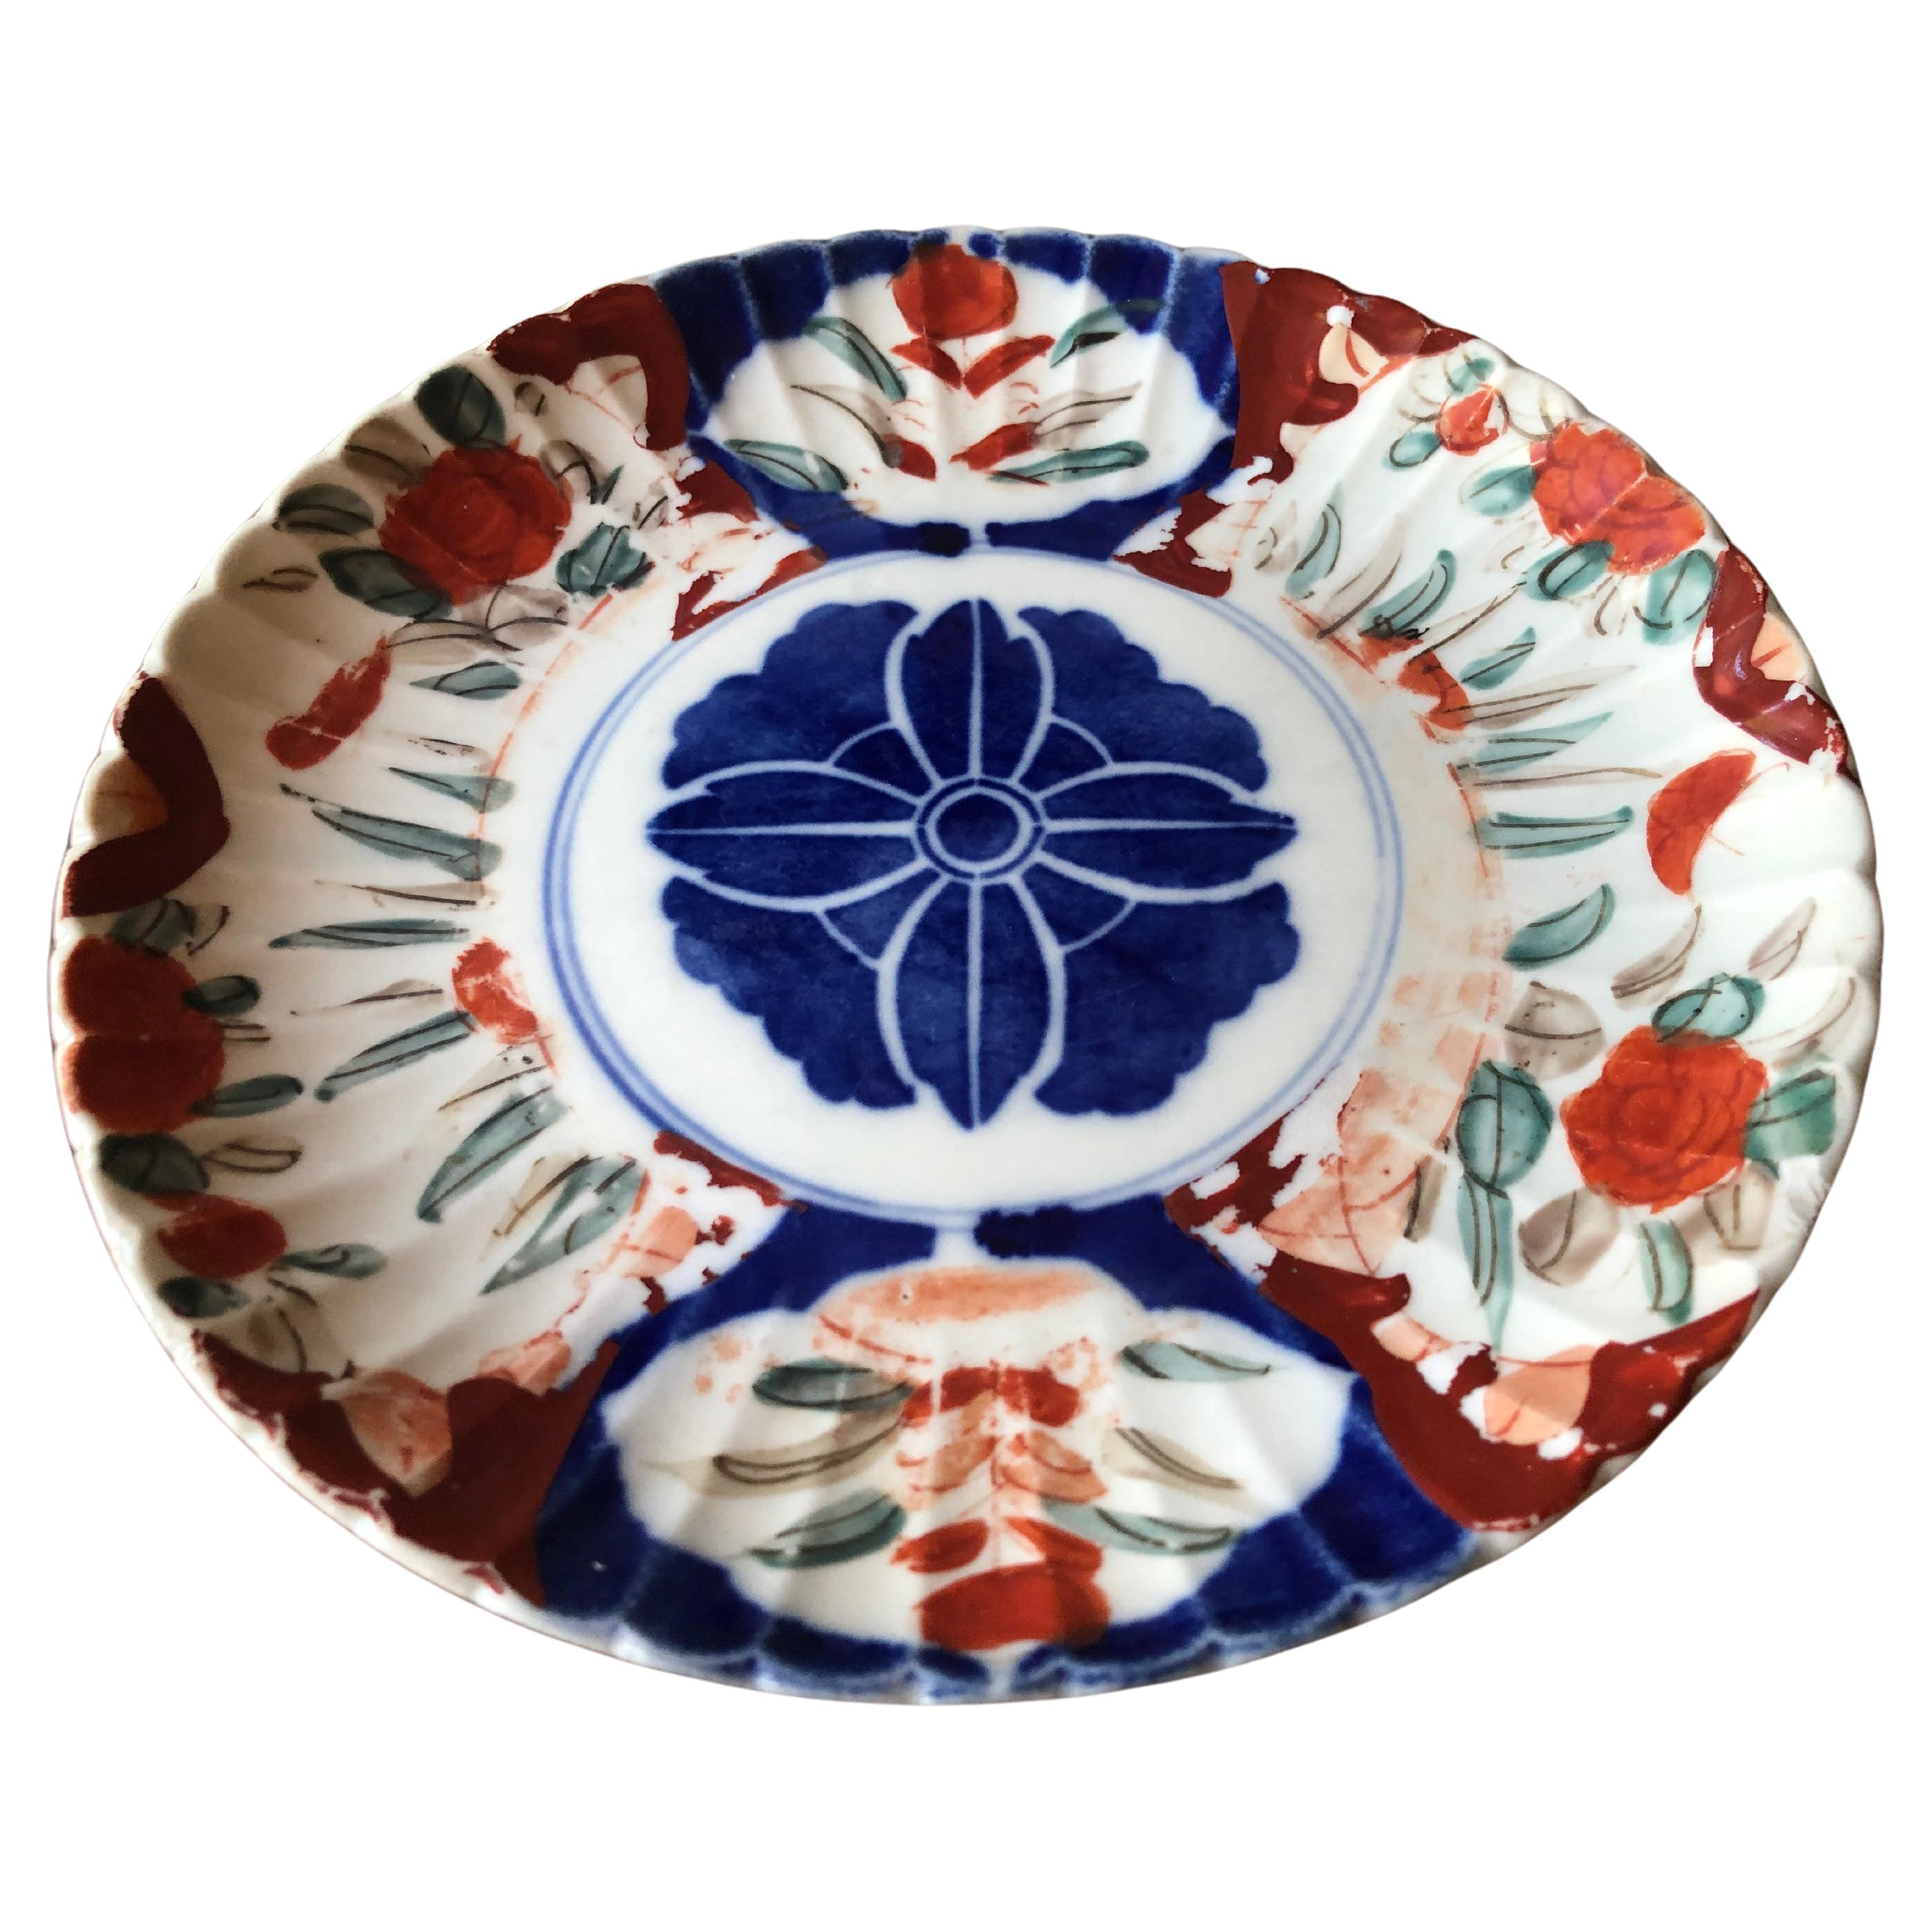 Merveilleuse assiette Imari antique du 18ème au 19ème siècle avec un bord festonné.
Peint à la main avec un médaillon central bleu, entouré de motifs vibrants orange, cramoisi, bleu et vert. Non marqué sur le fond.